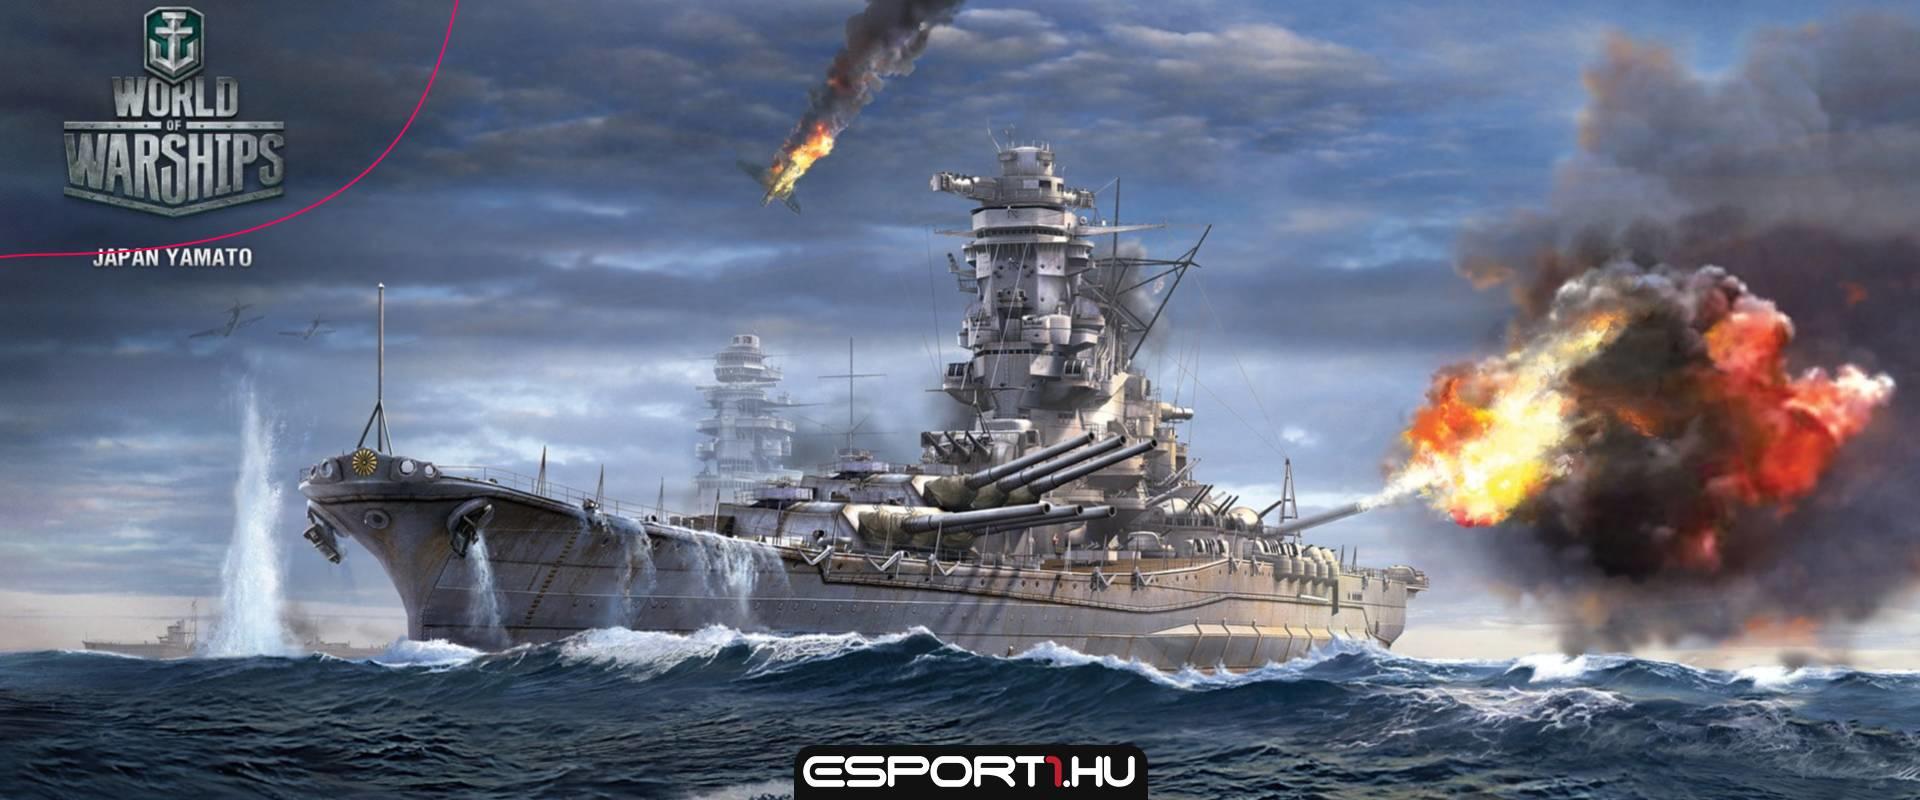 World of Warships - Magyar játékos az 50,000 dolláros nemzetközi fináléban!